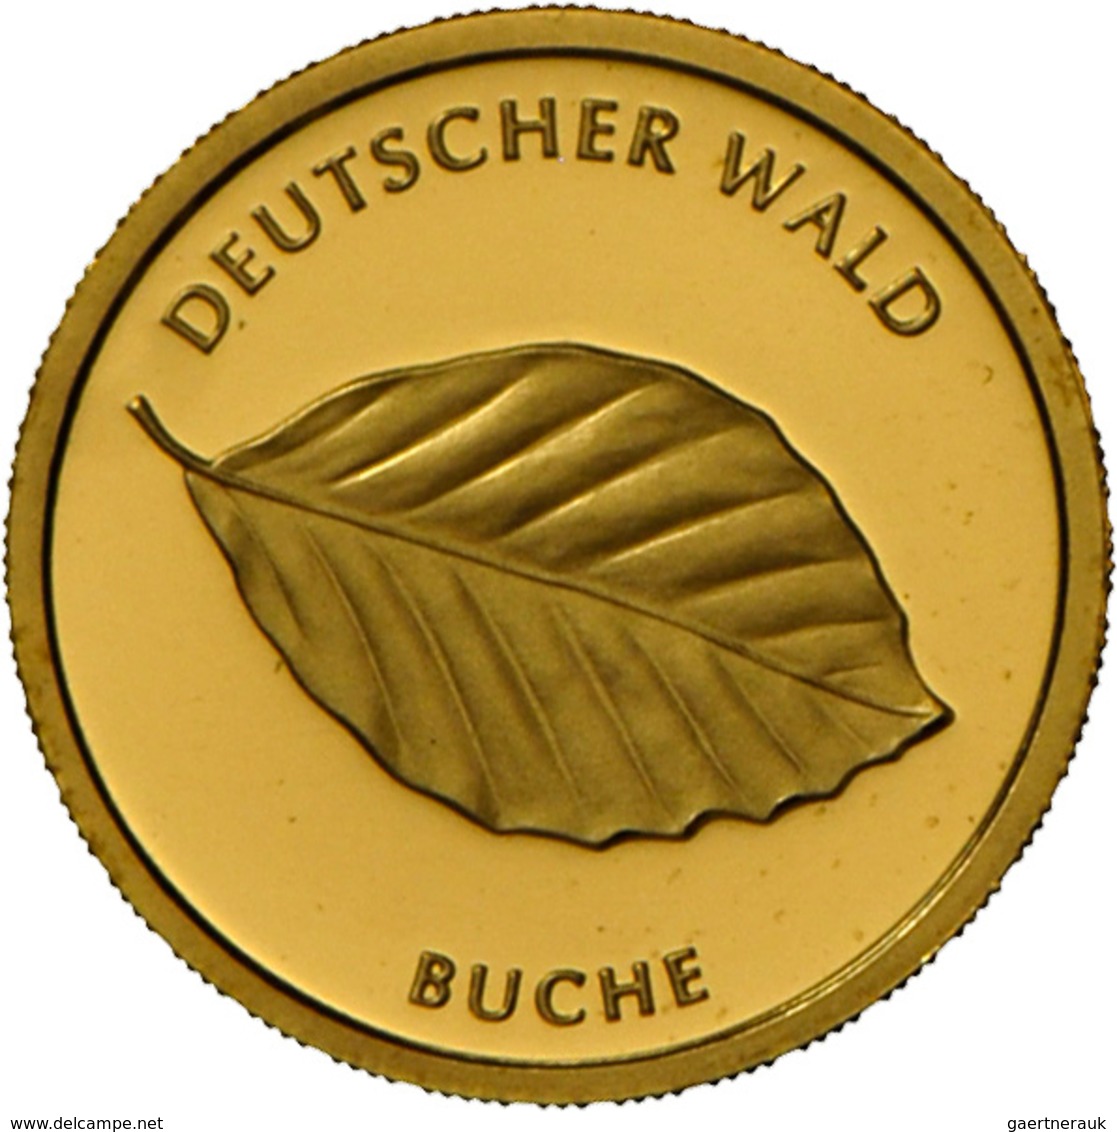 Deutschland - Anlagegold: 5 X 20 Euro Gold Serie Deutscher Wald: 2 X Eiche (2010), 2 X Buche (2011) - Alemania